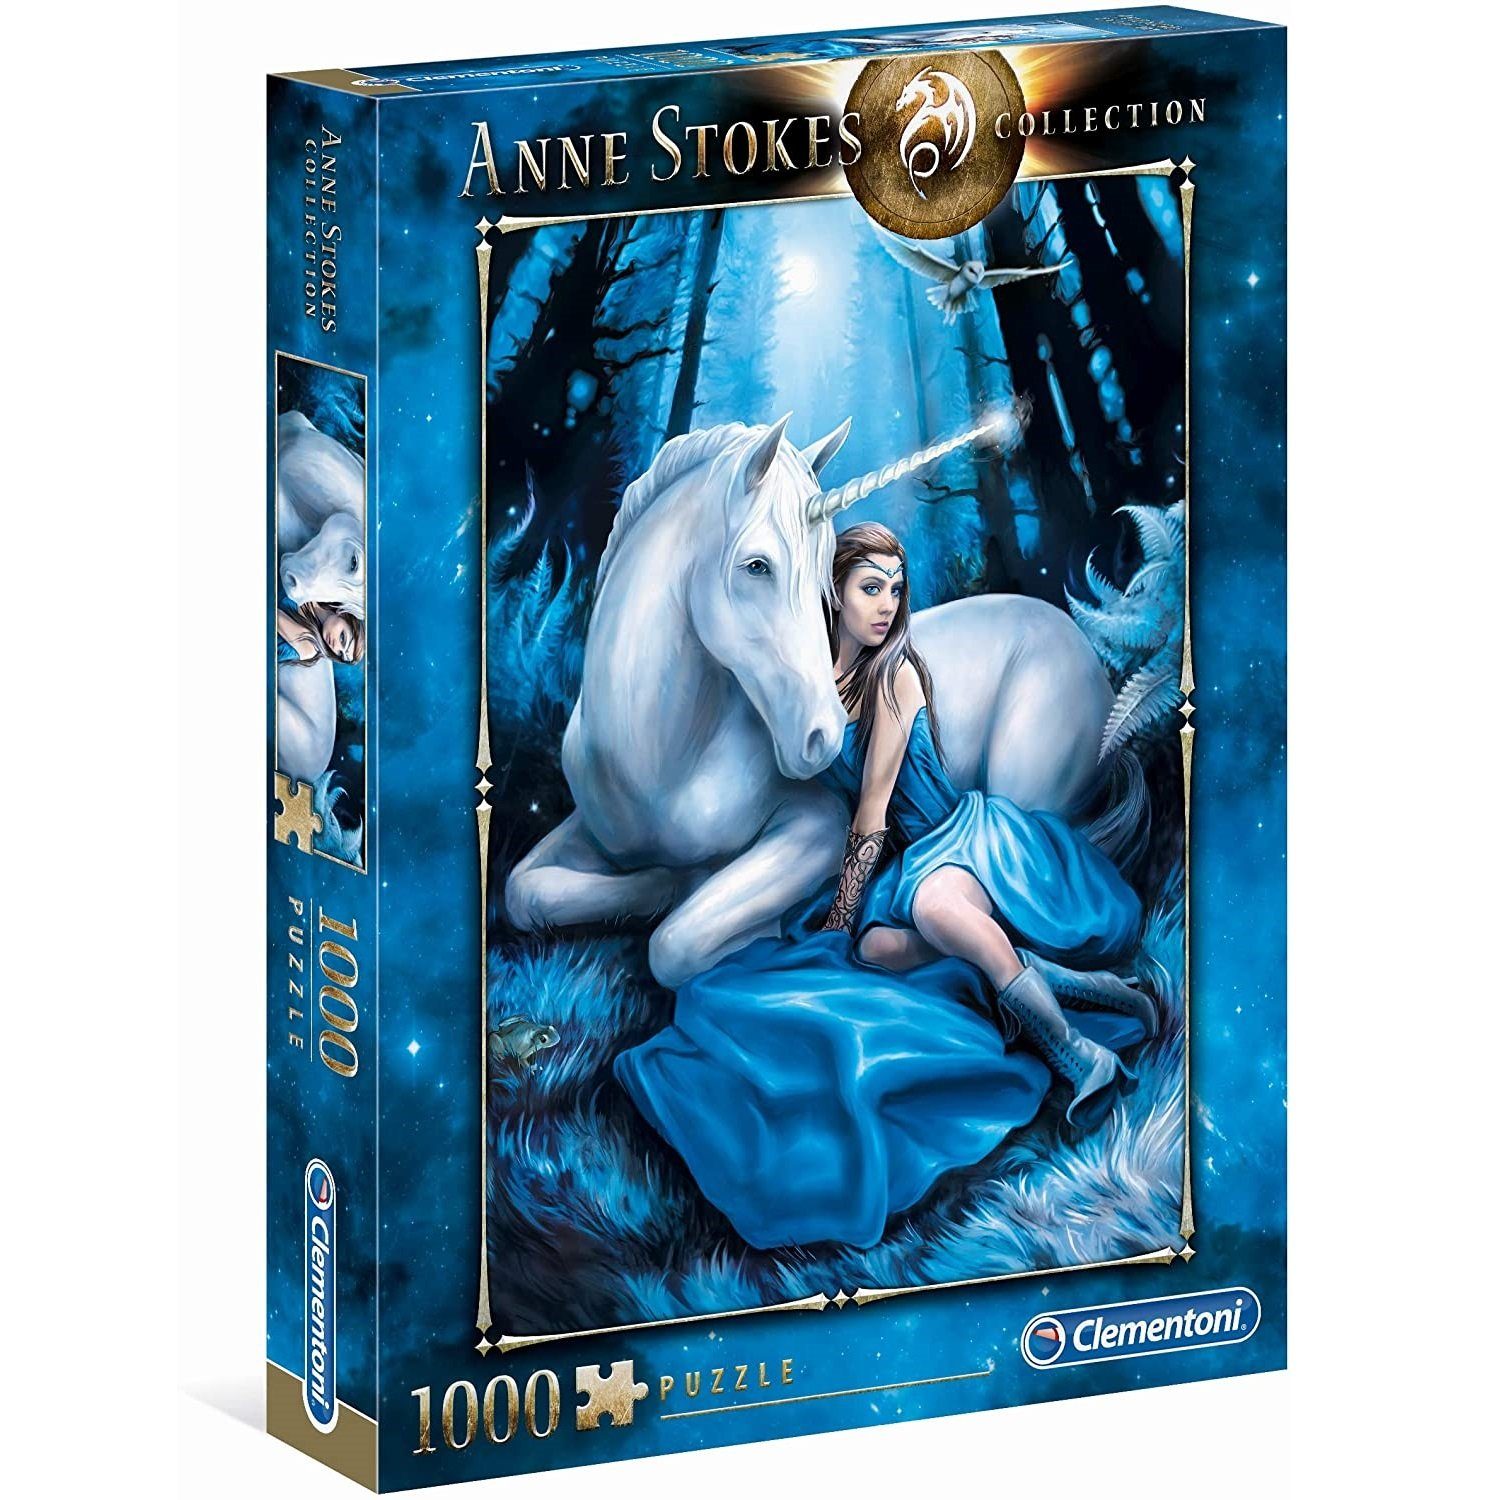 Puzzle Clementoni® 1000 Stokes: Puzzleteile - 1000 Anne Blue Teile, Clementoni Moon,